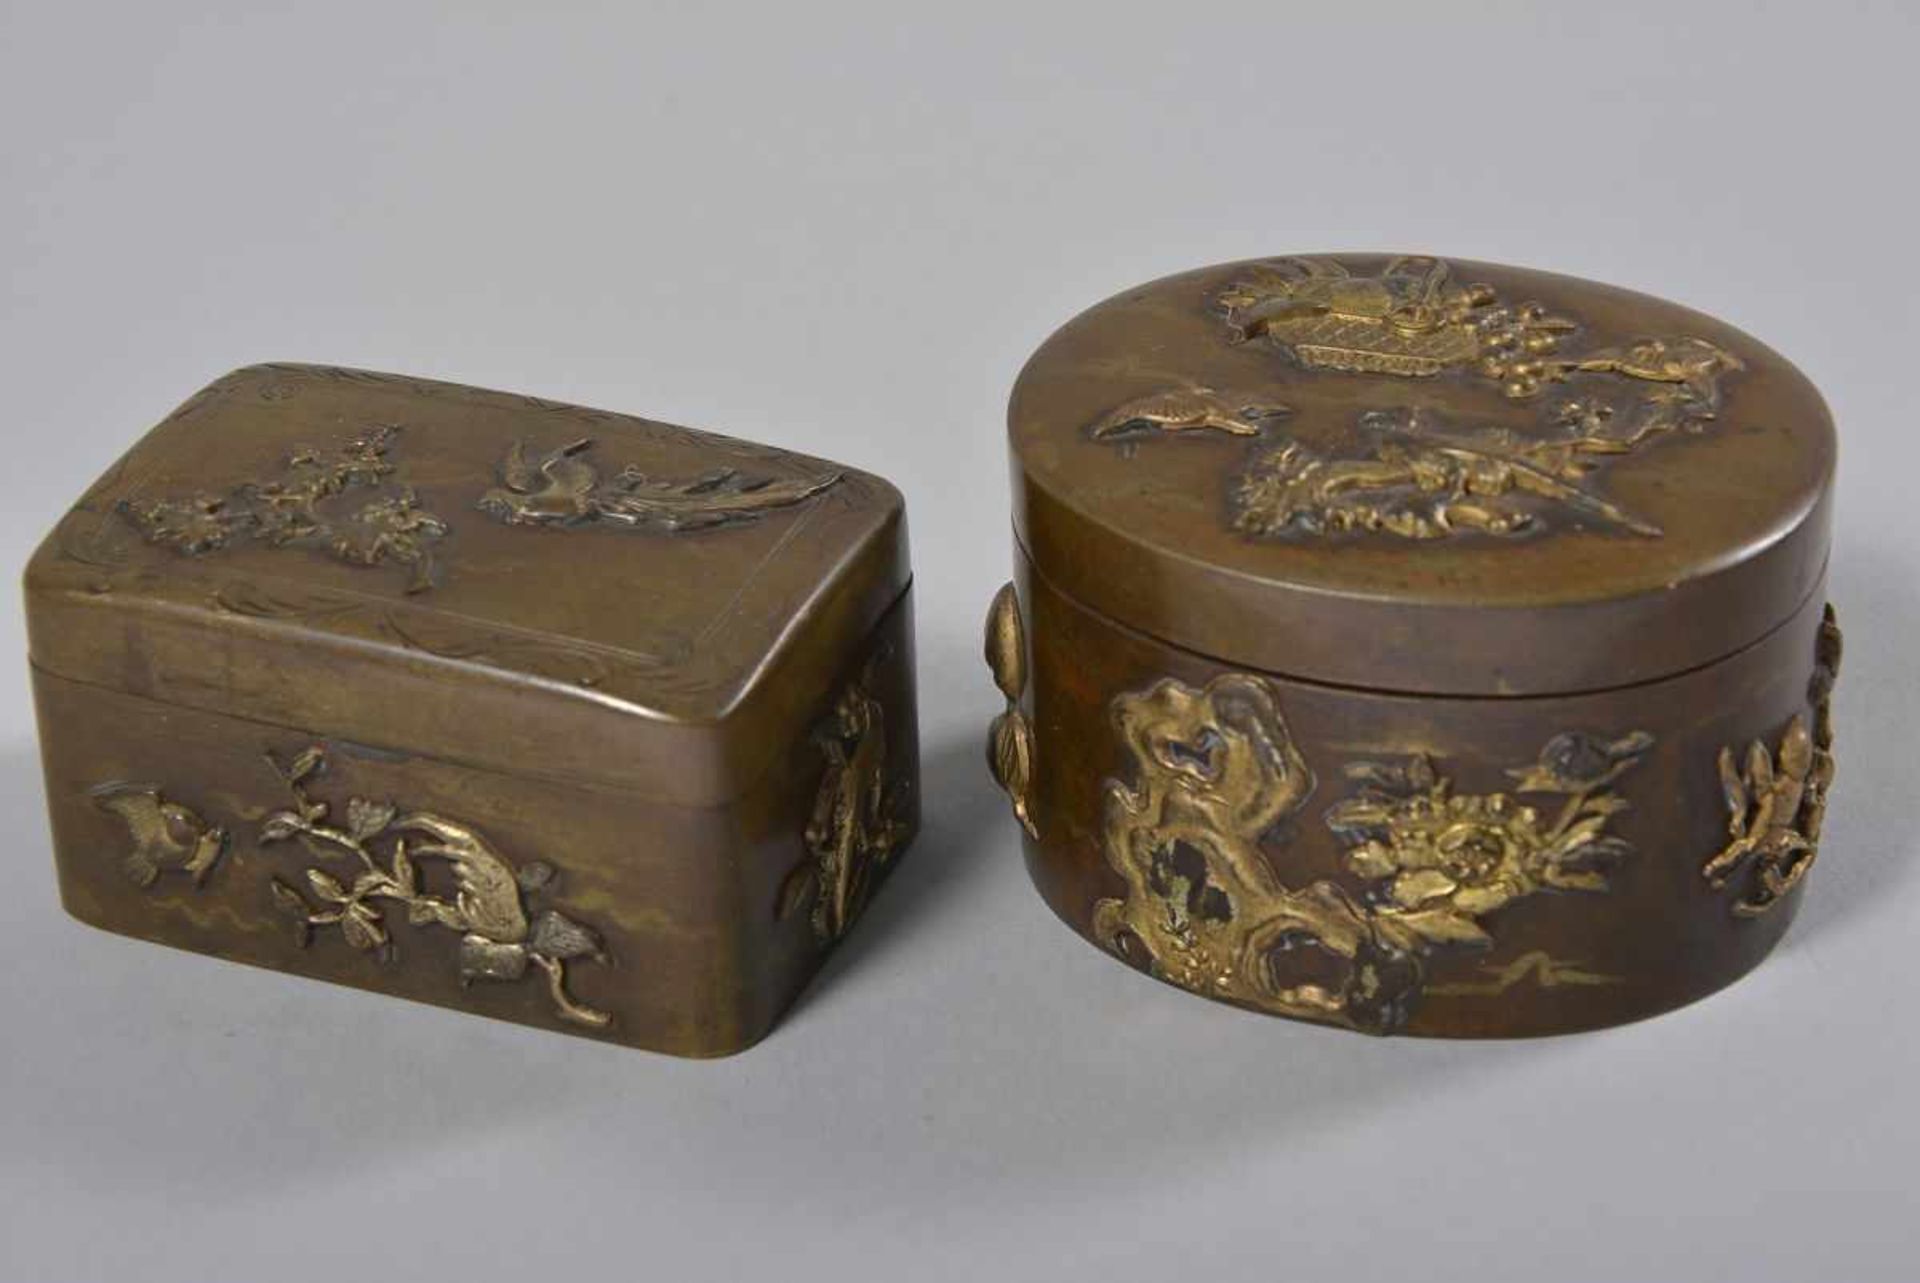 2 kleine DosenJapan, um 1900, oval bzw. rechteckig, aufgelegter Floral- und Vogeldekor, Kupfer/